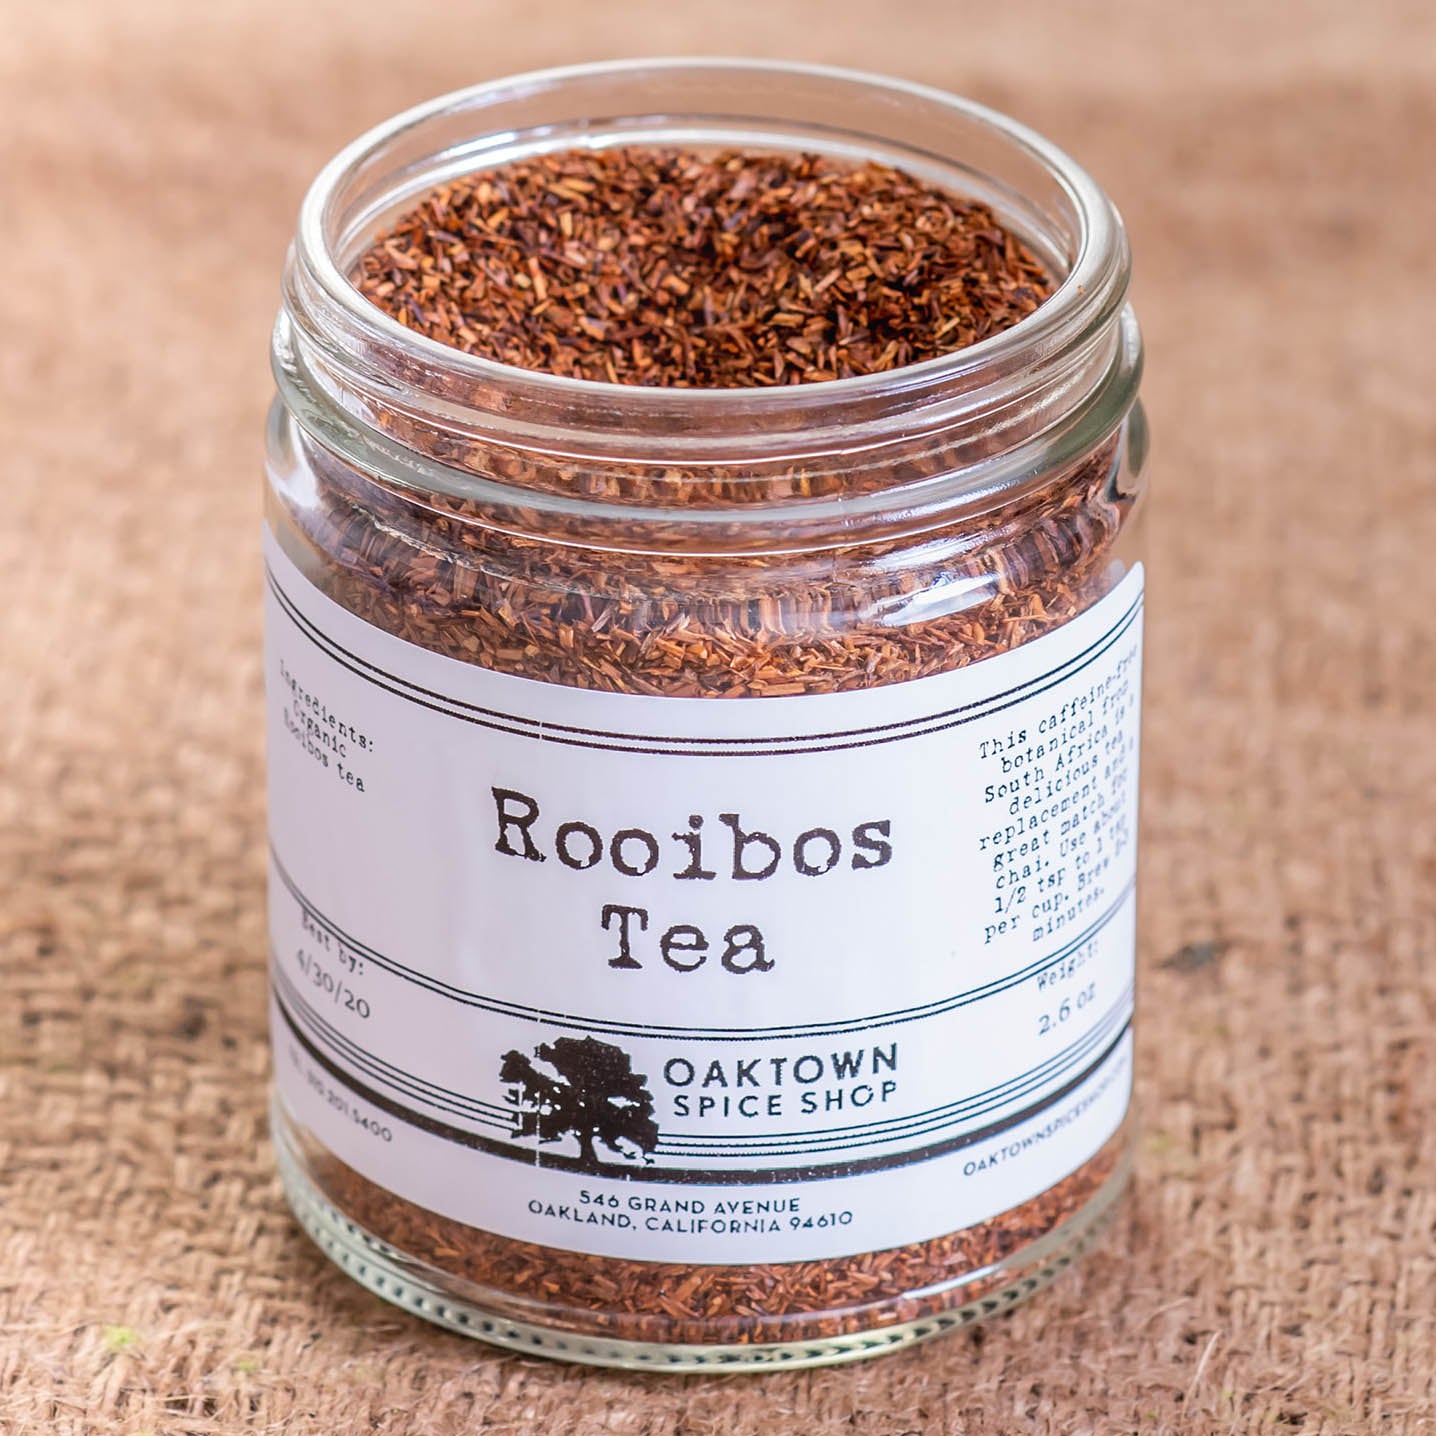 what is rooibos tea? –